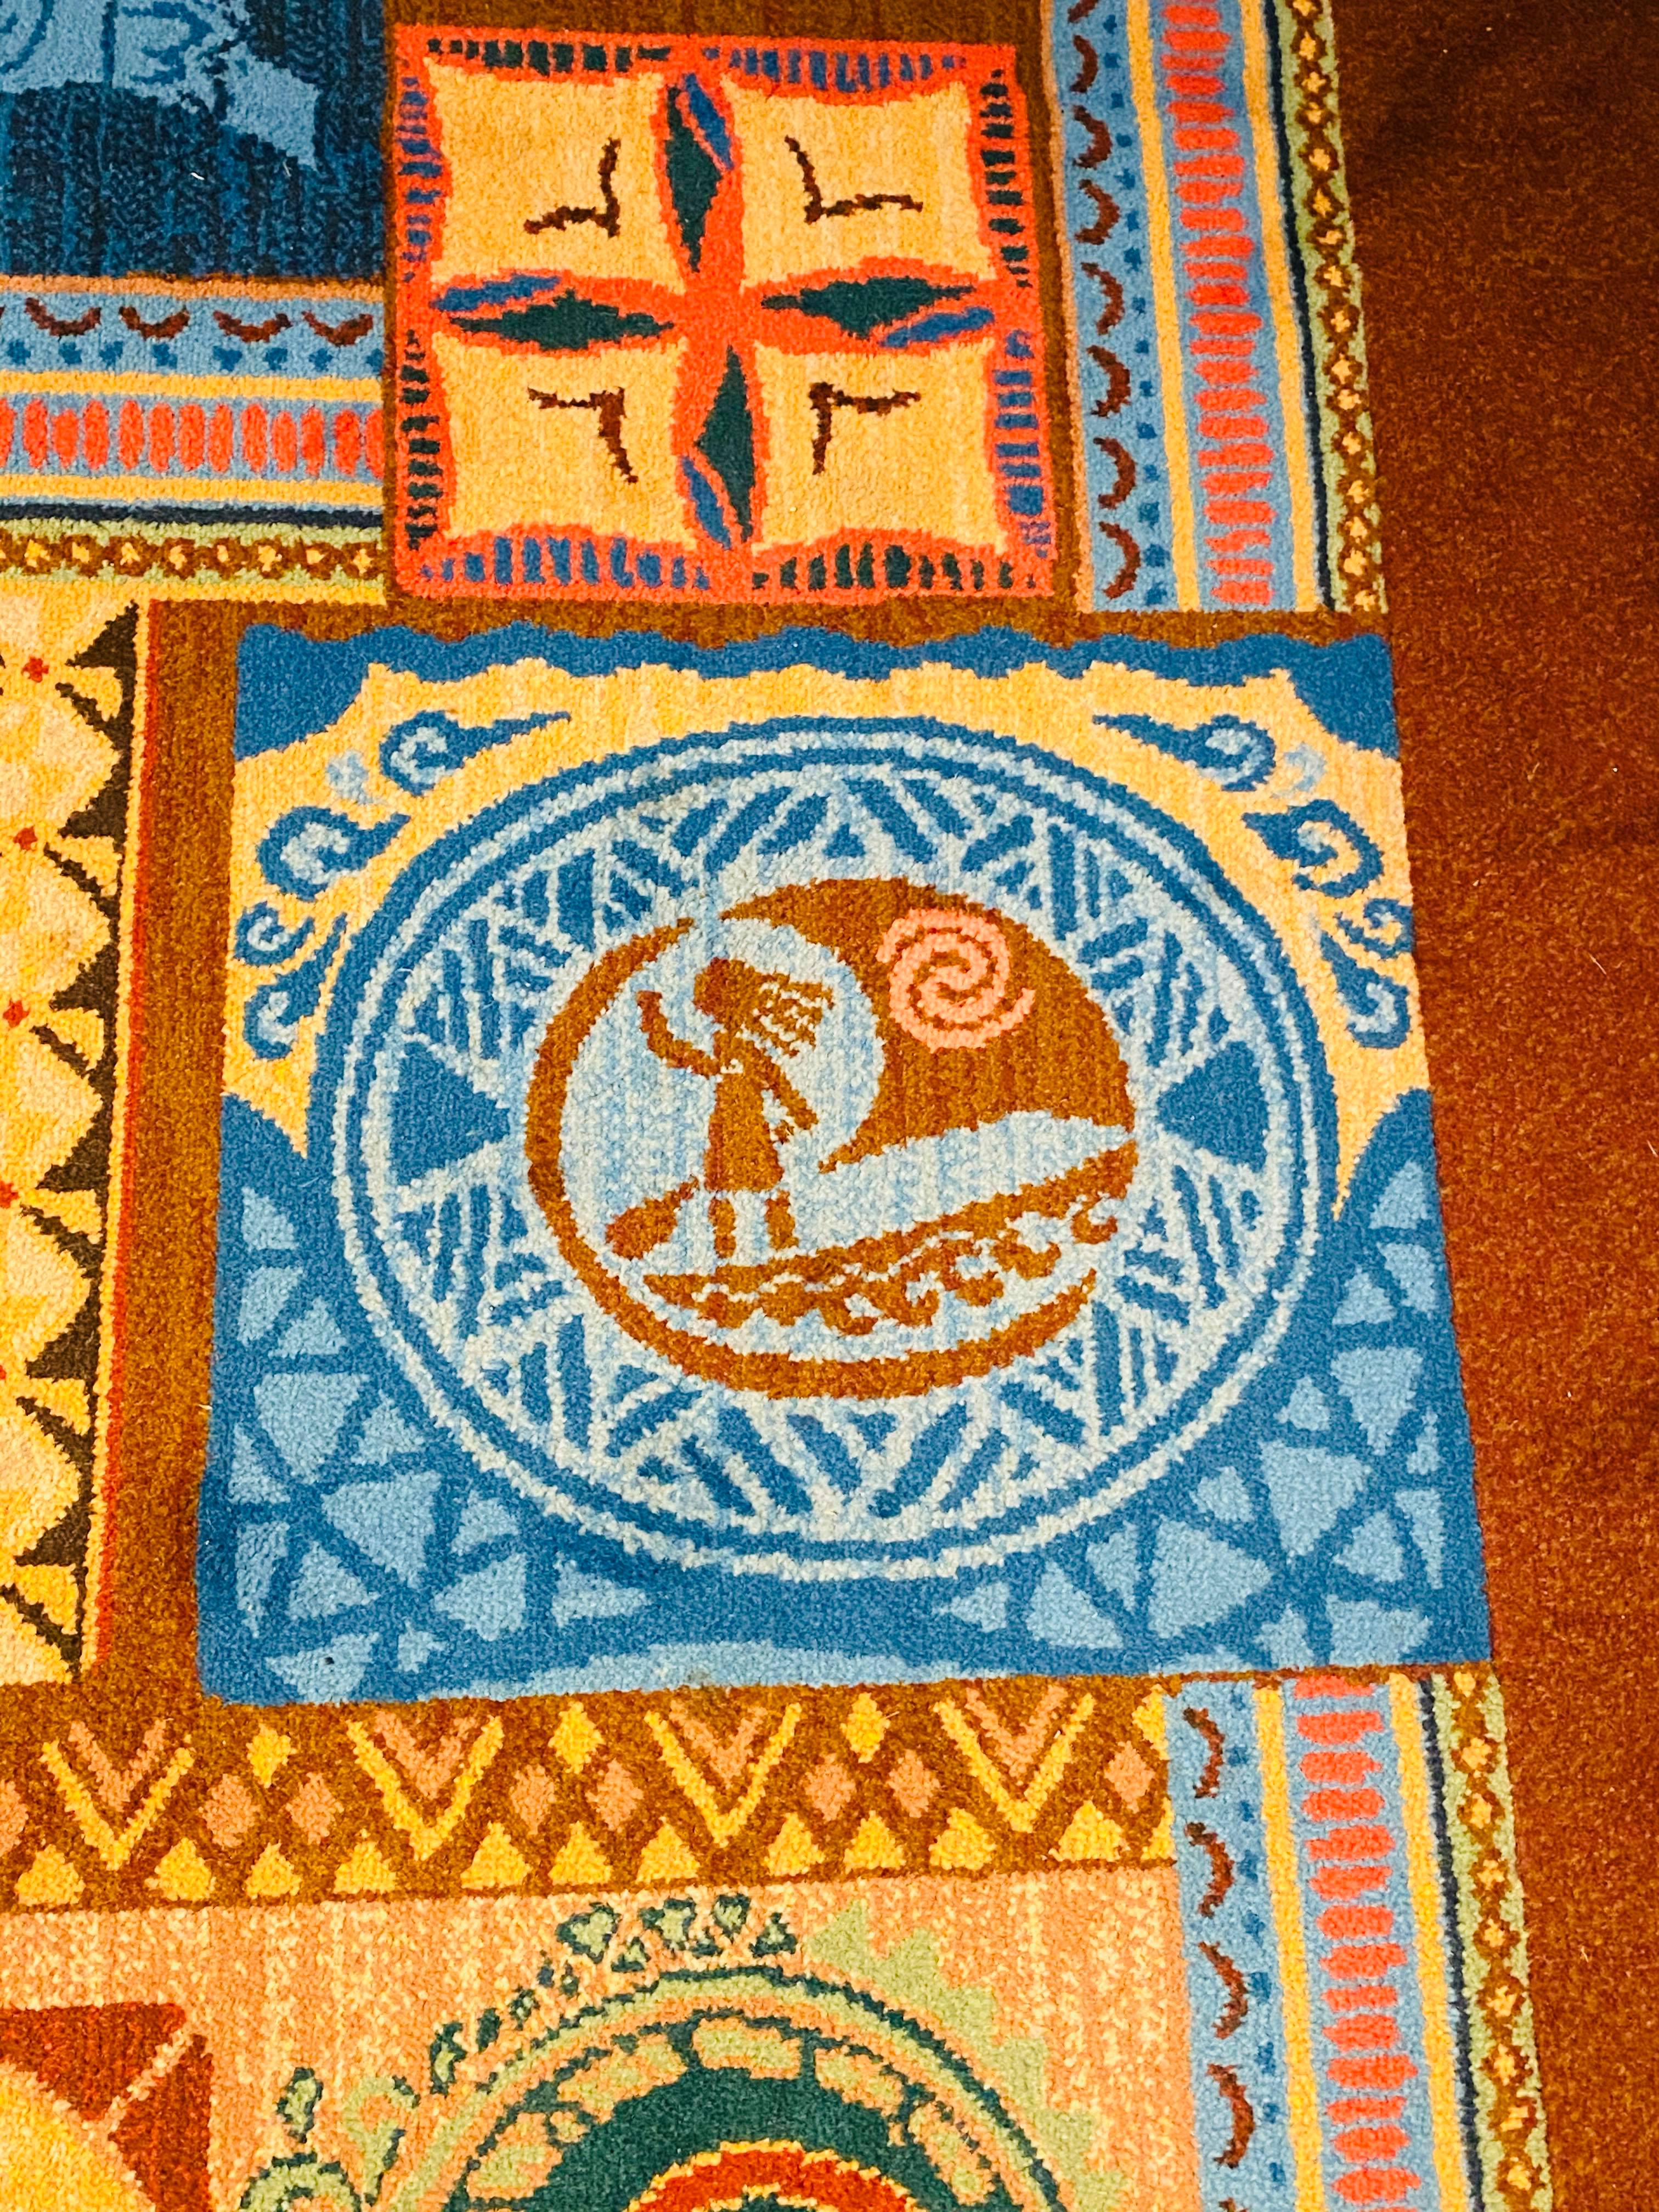 Moana Inspired Carpet at 'Ohana